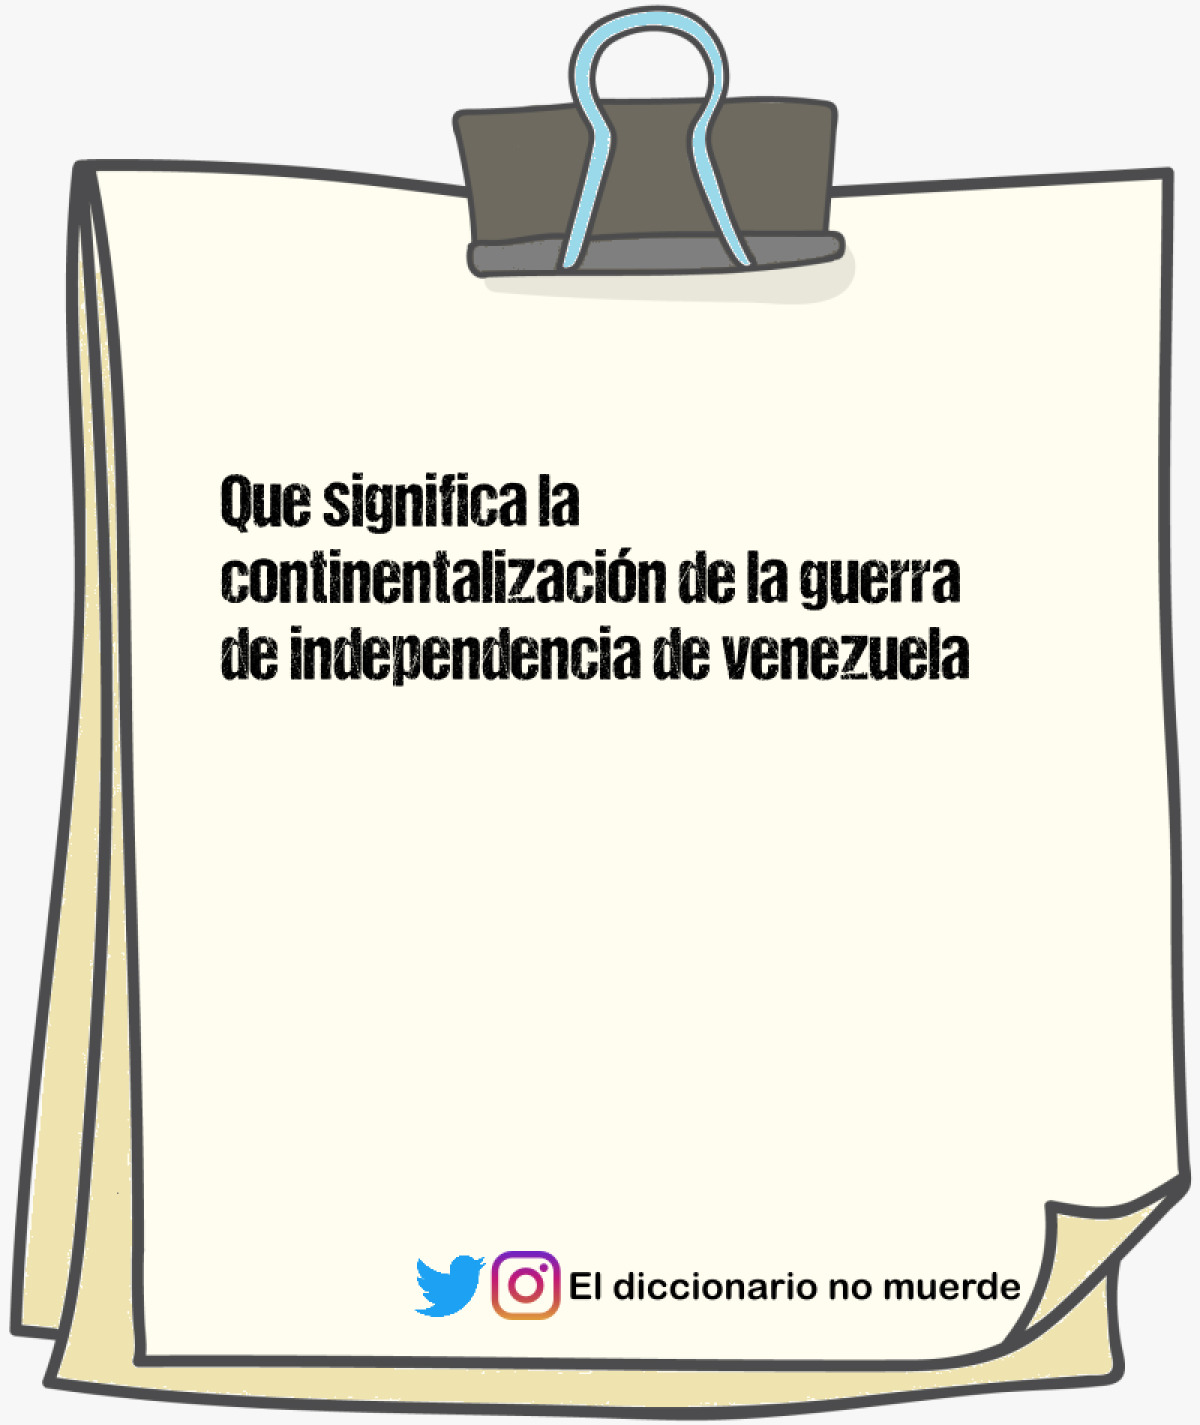 Que significa la continentalización de la guerra de independencia de venezuela